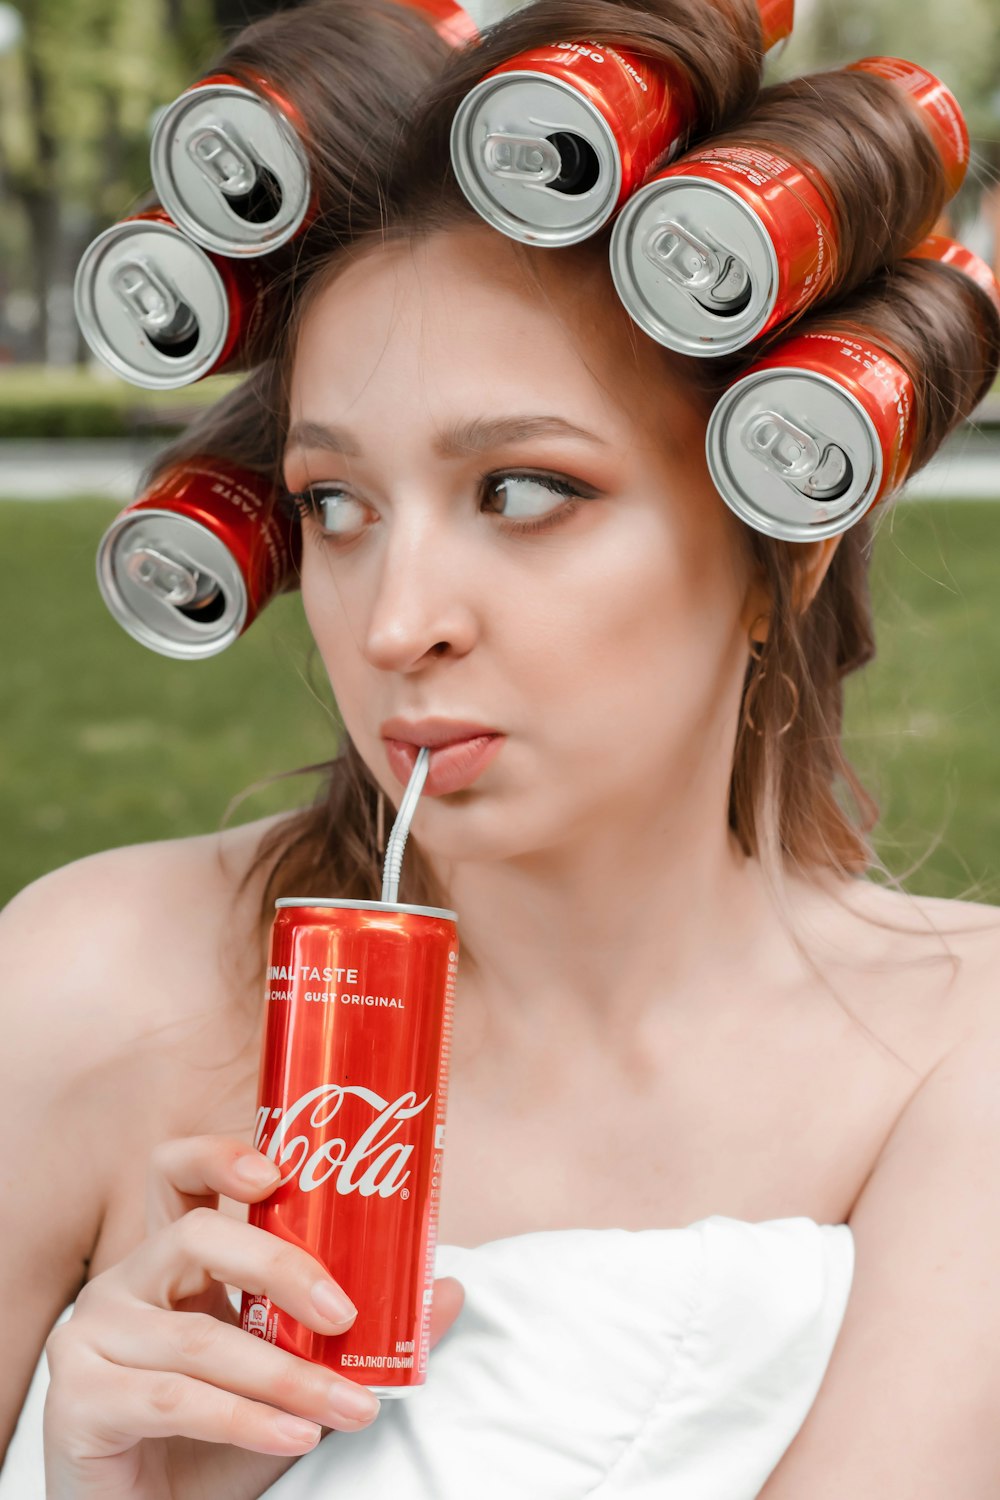 femme buvant une canette de coca cola